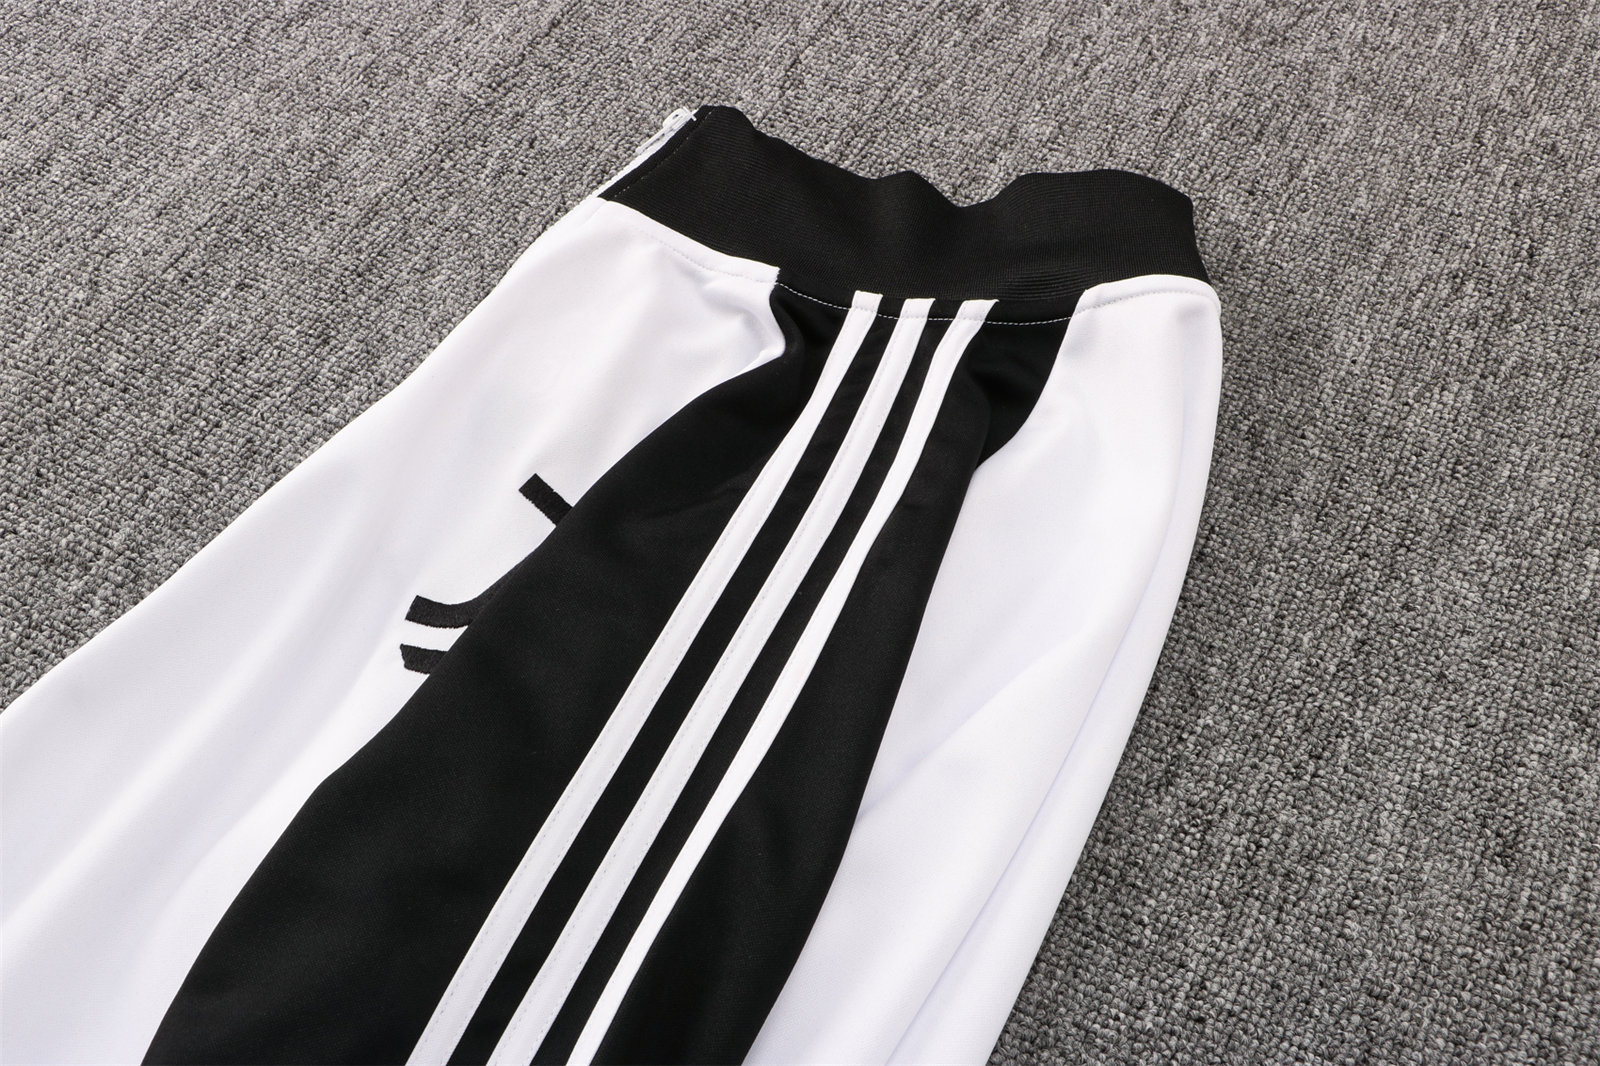 Juventus Soccer Training Suit Jacket + Pants White - Black Mens 2021/22